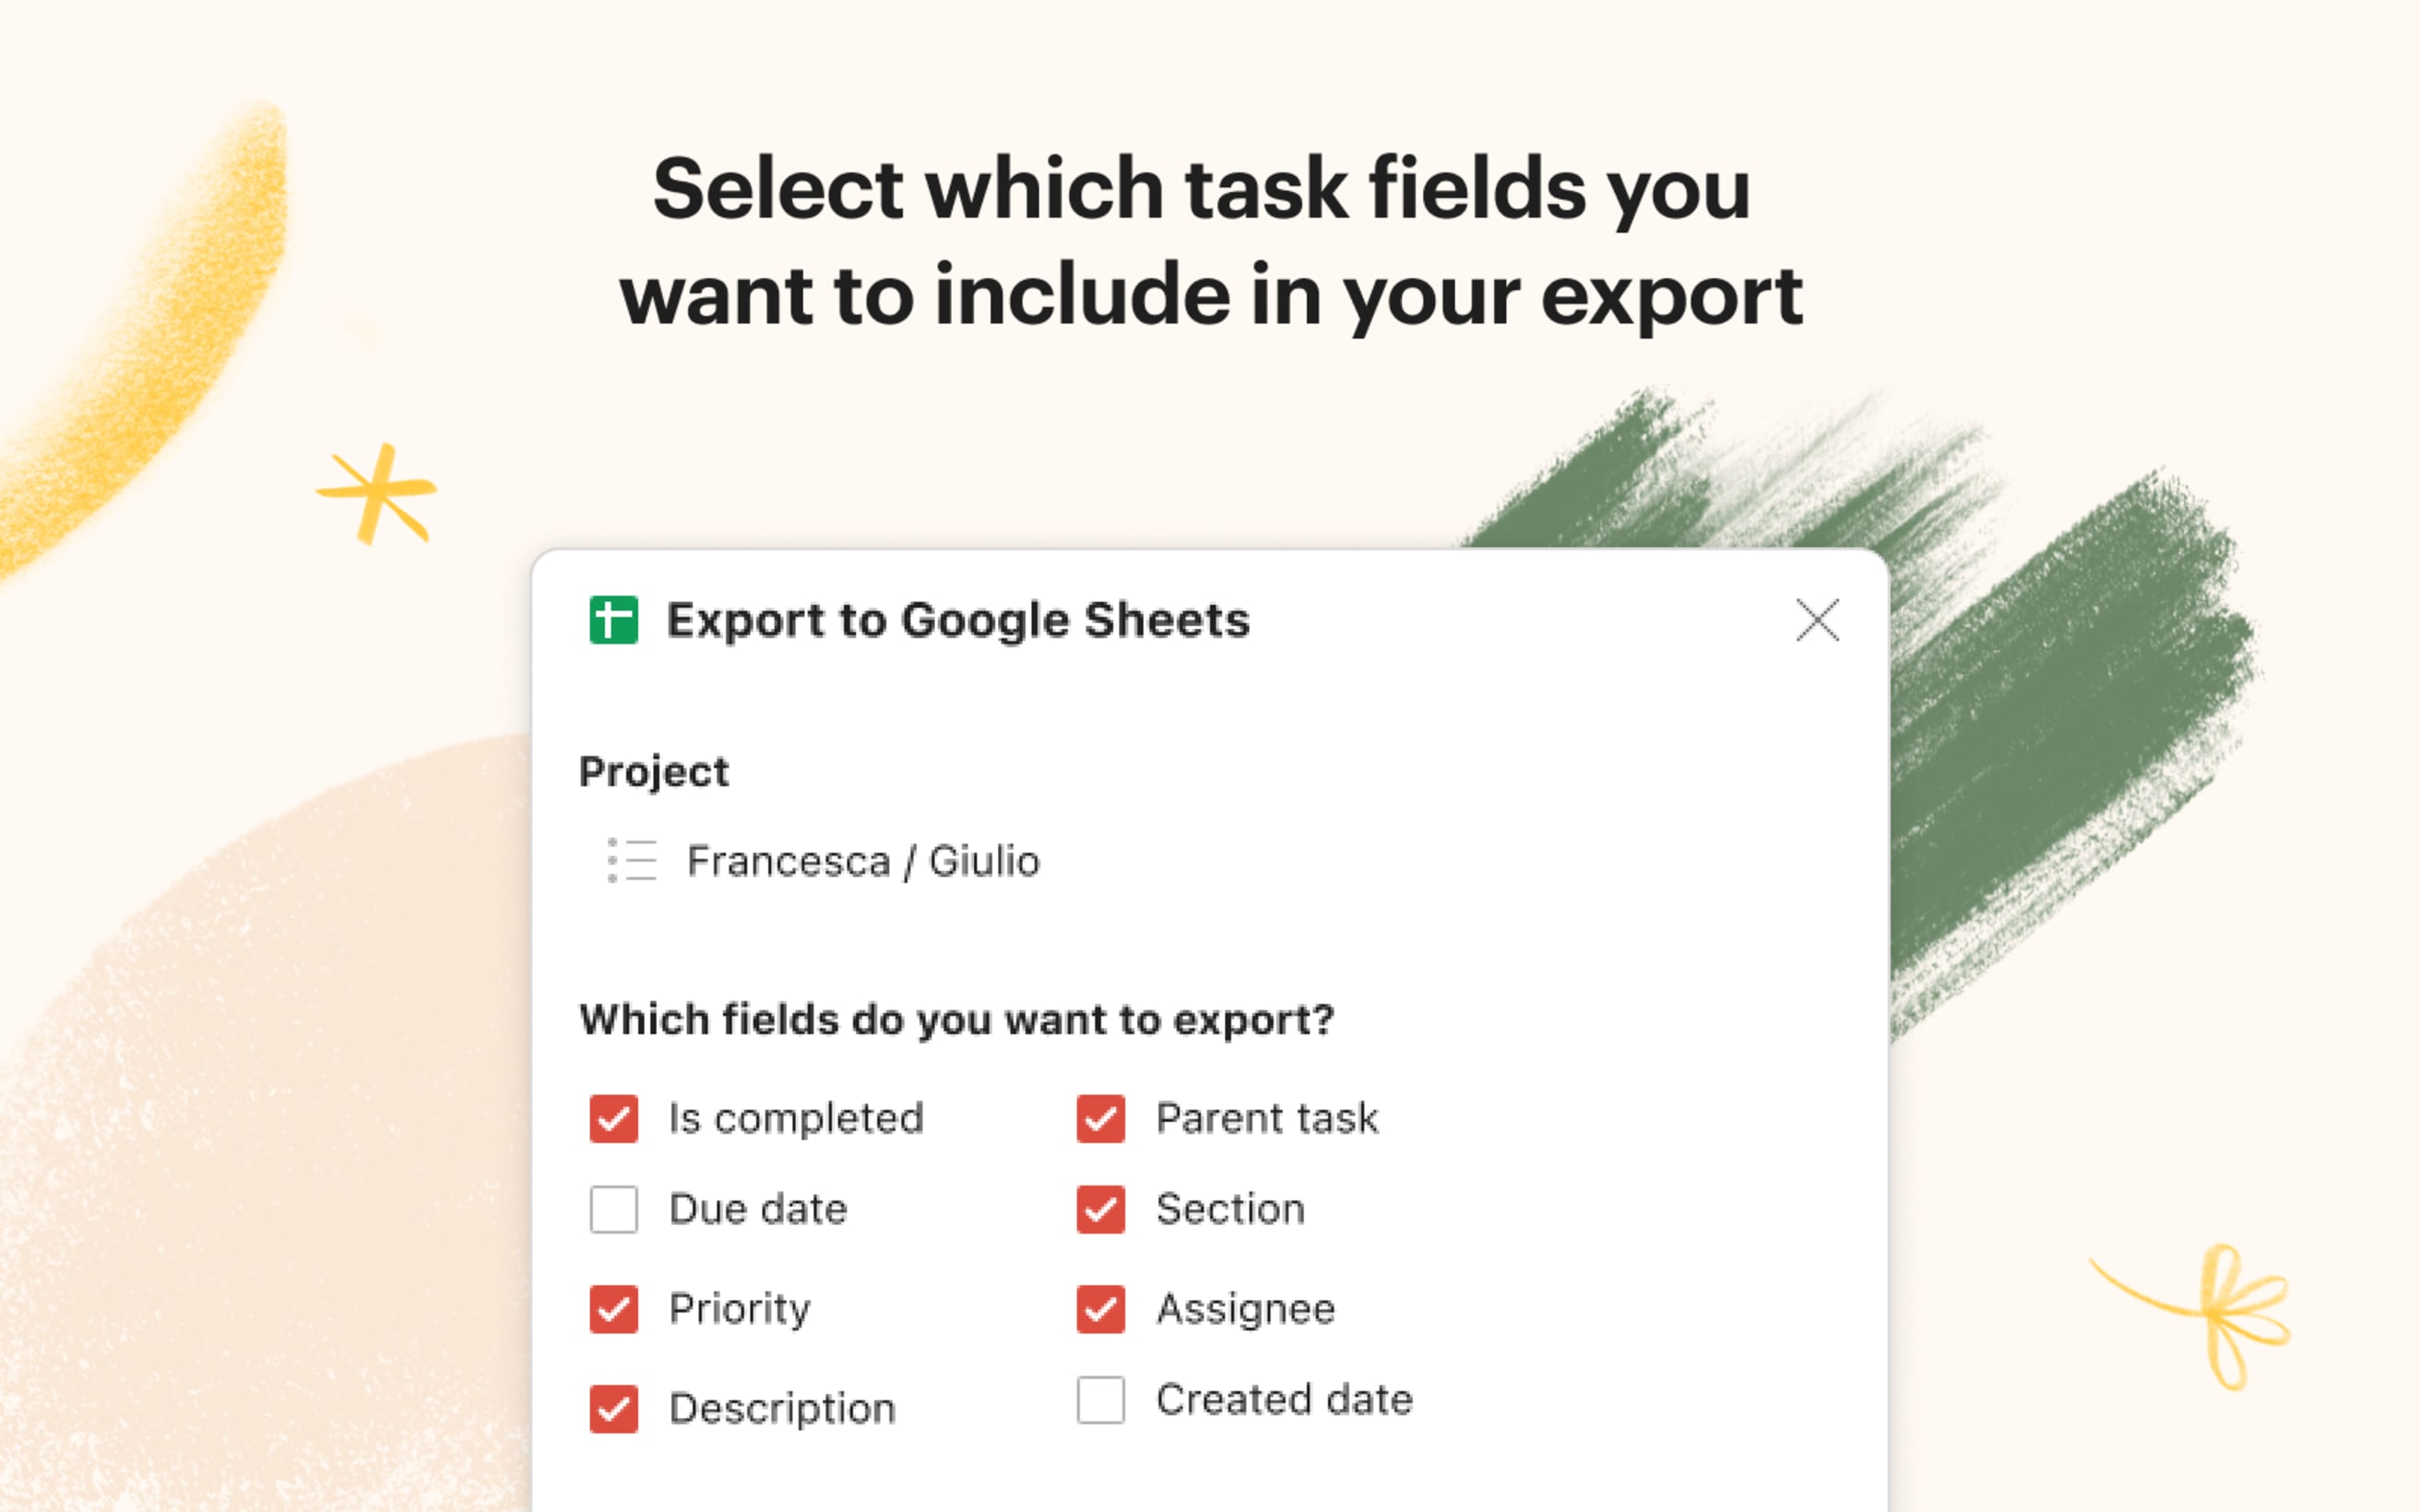 Export to Google Sheets - selección de campos